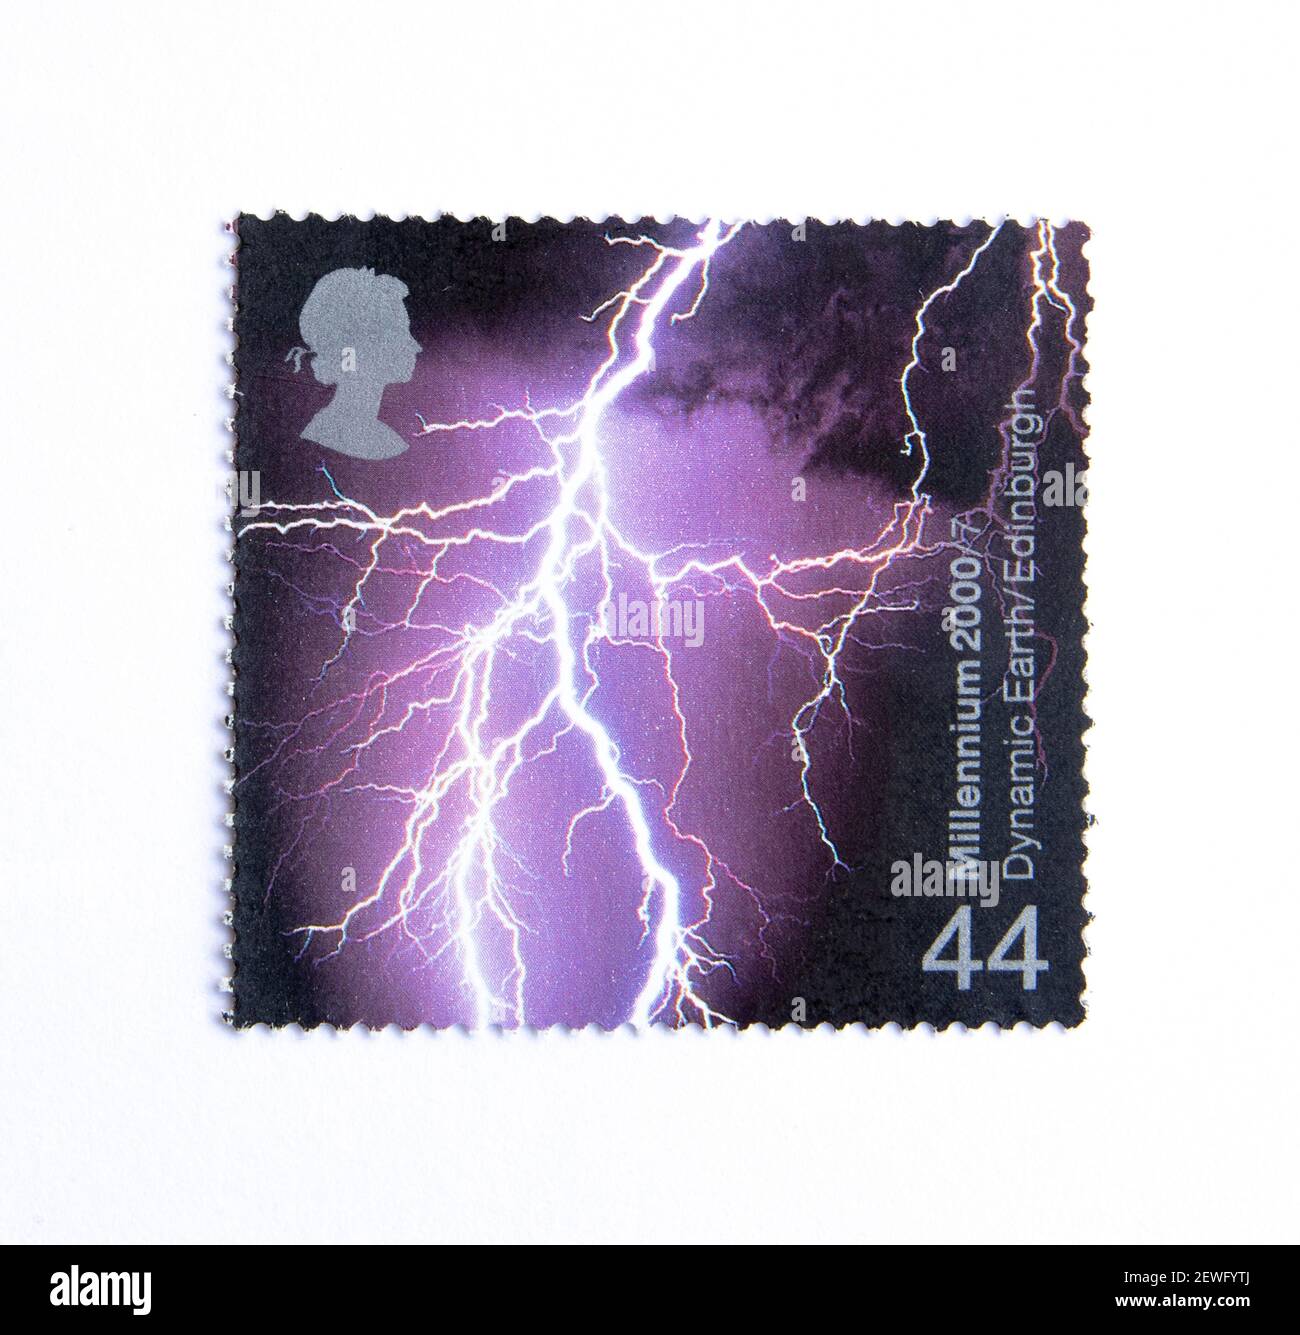 Großbritannien - UM 2000: Eine in Großbritannien gedruckte Briefmarke zeigt das Bild von Dynamic Earth Edinburgh, um 2000. Stockfoto